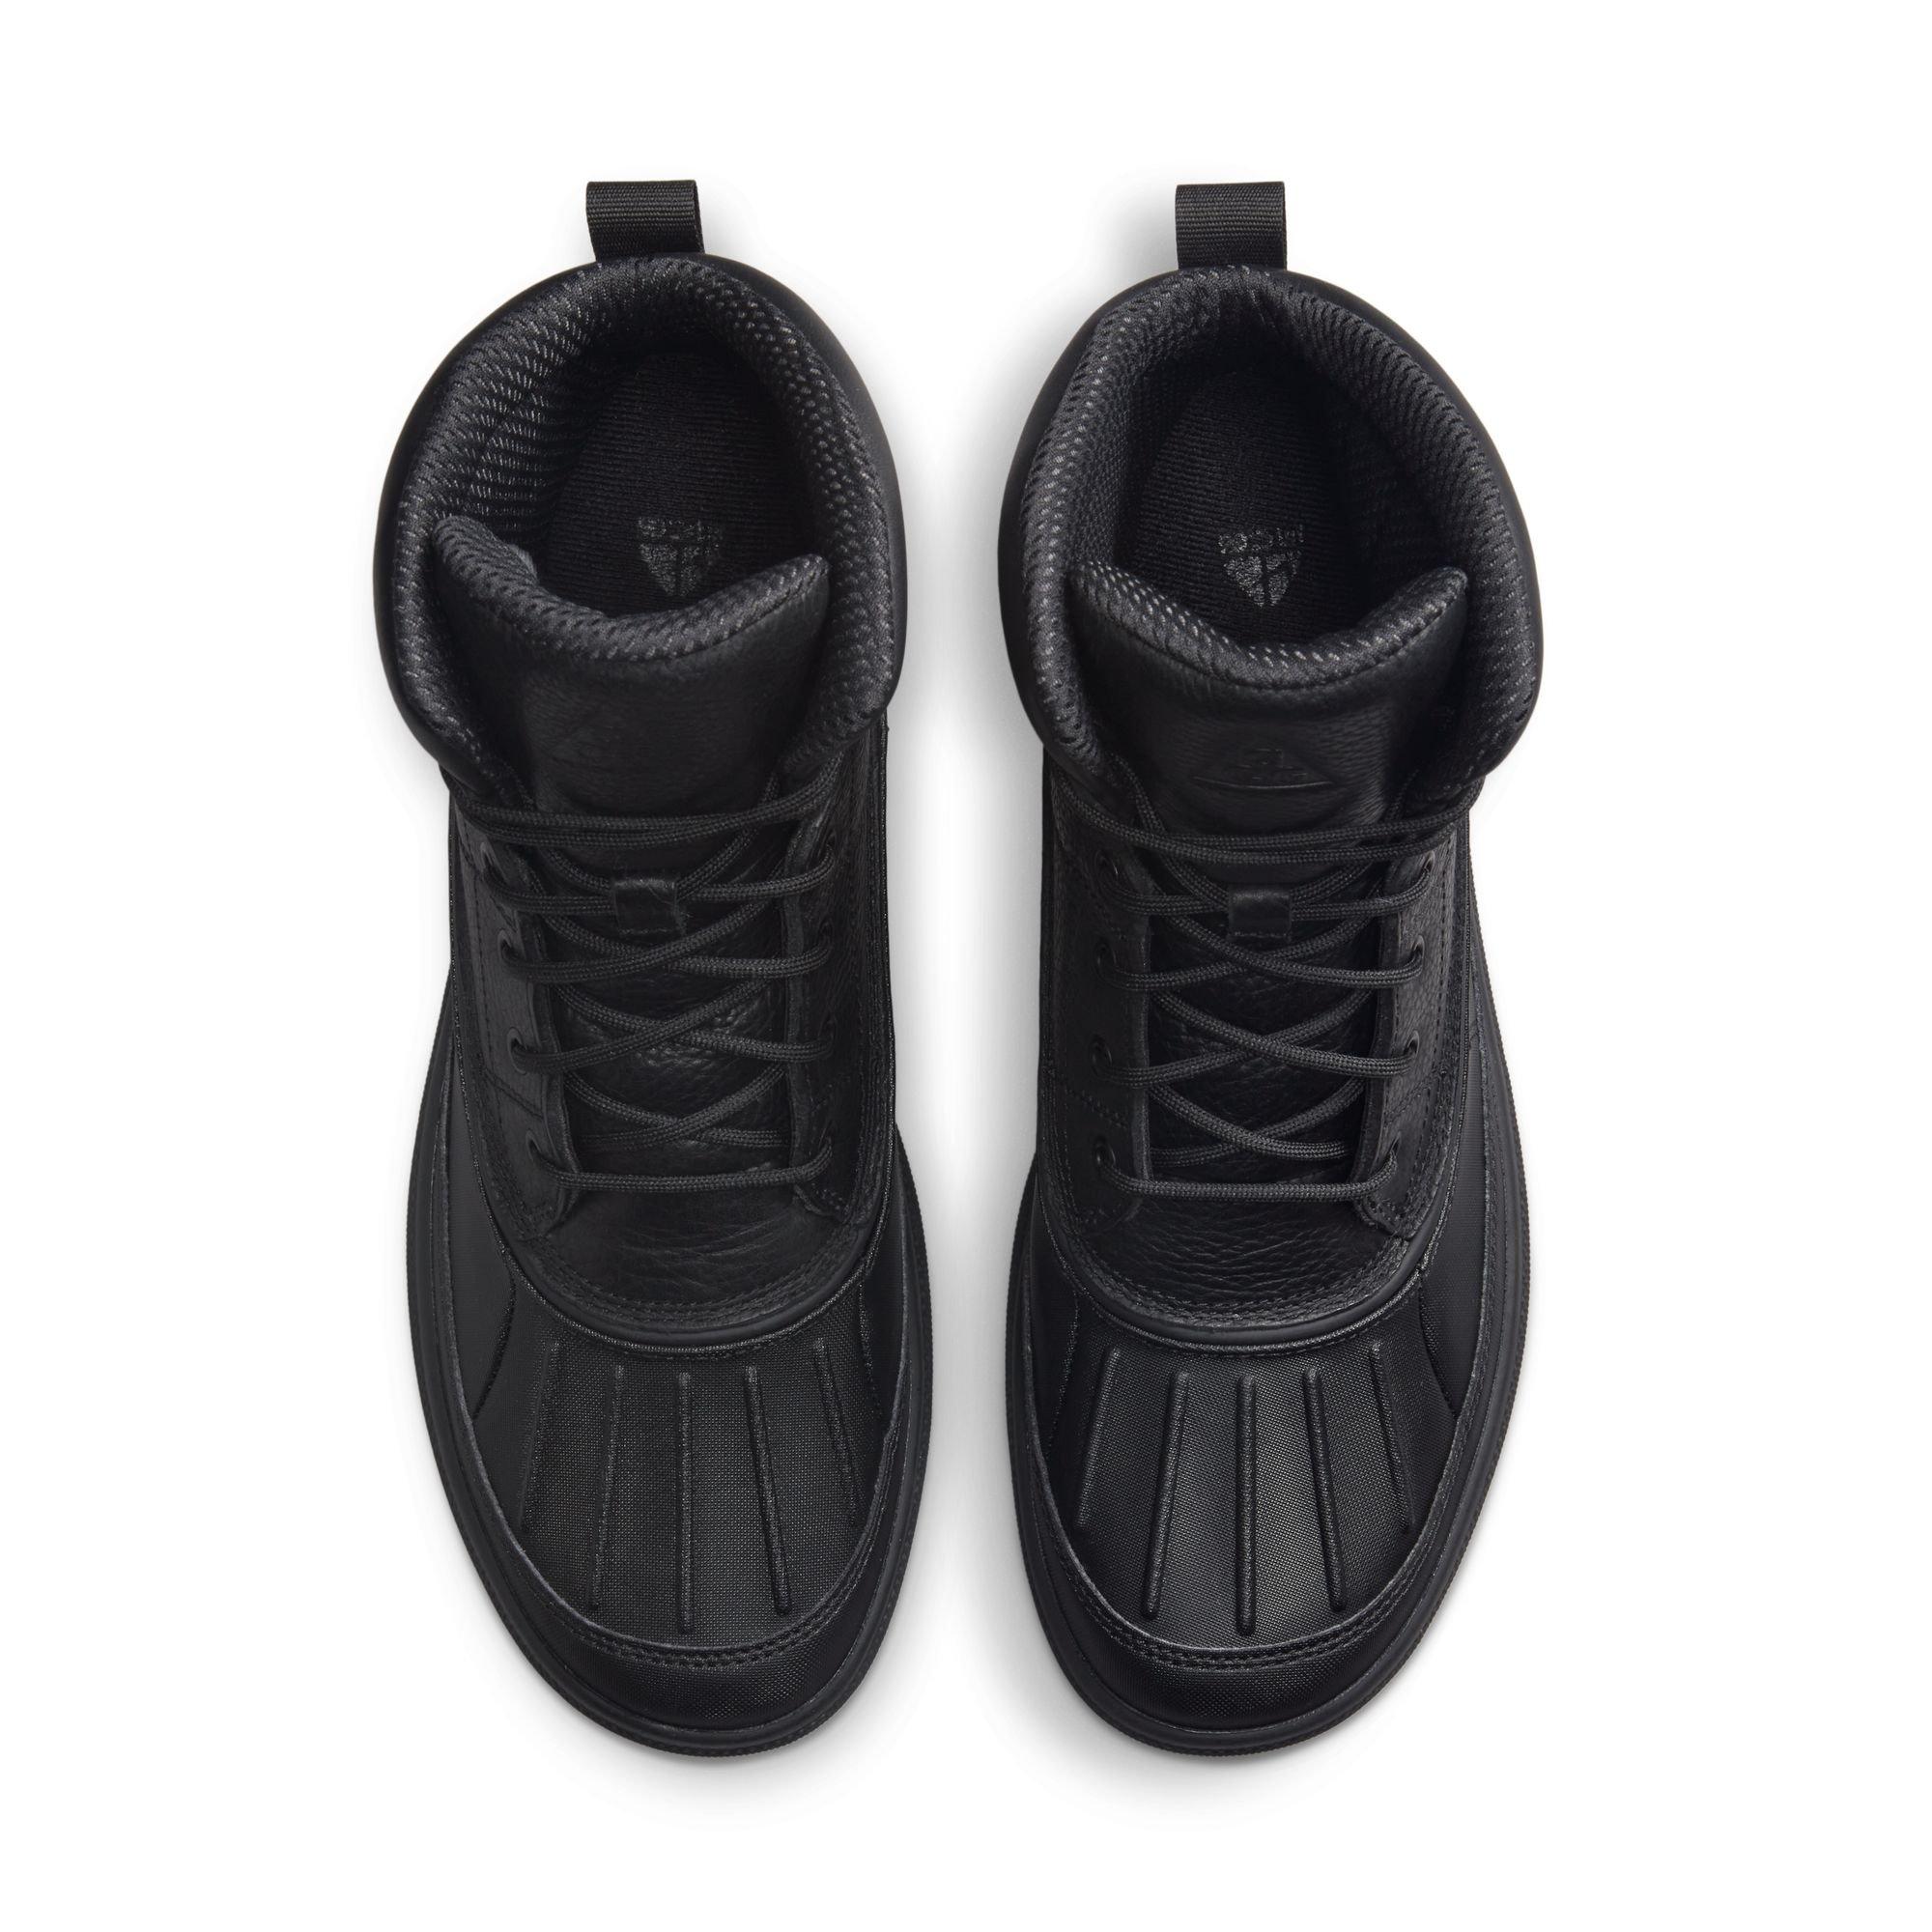 Nike Woodside ACG "Black" Boot - Hibbett | Gear